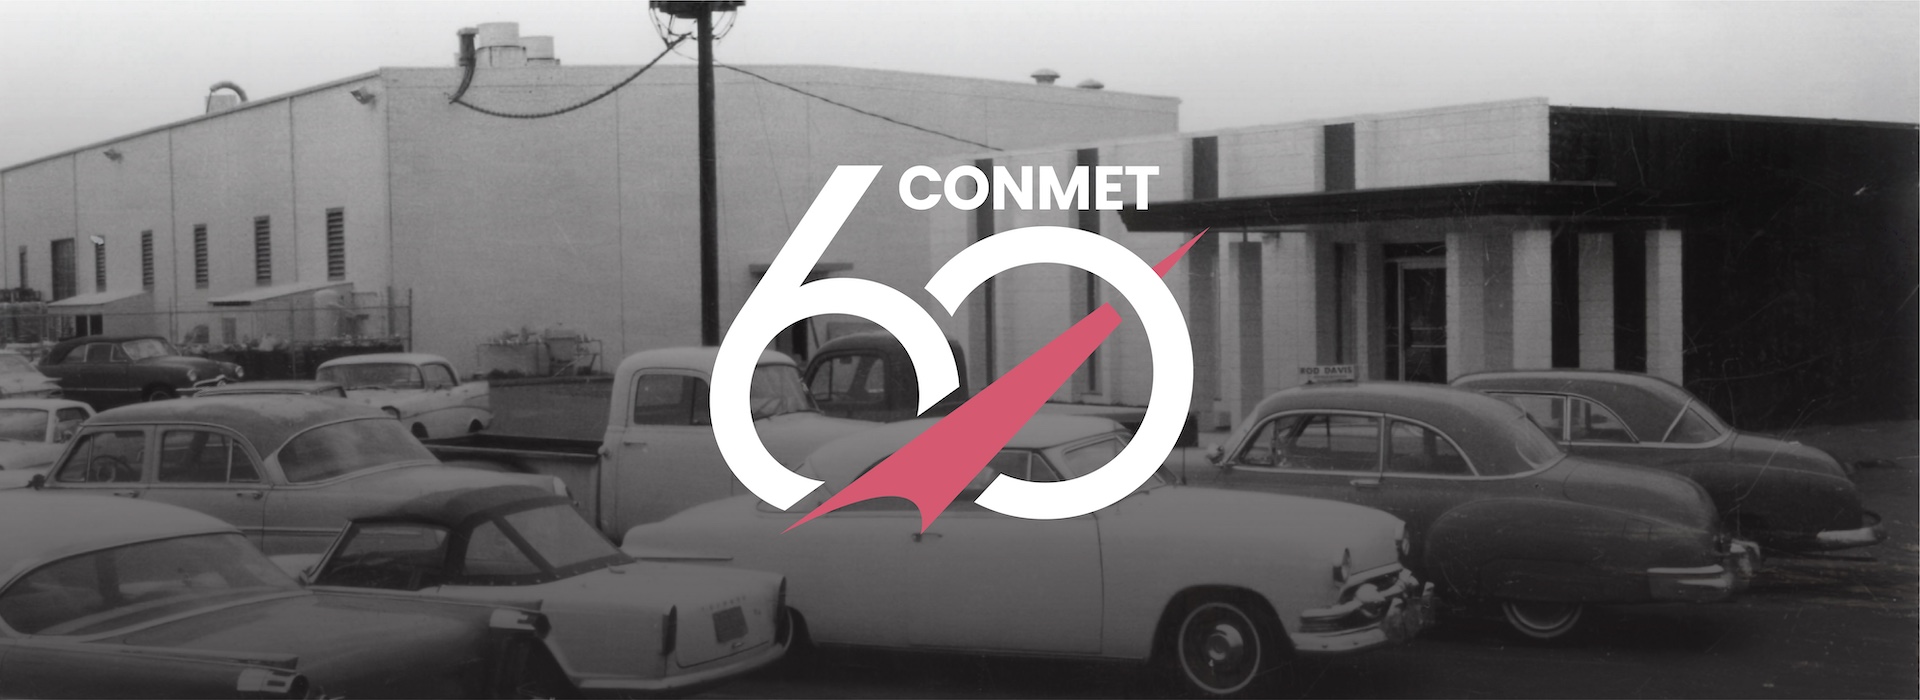 ConMet célèbre 60 années d'innovation et de rôle de premier plan dans l'industrie